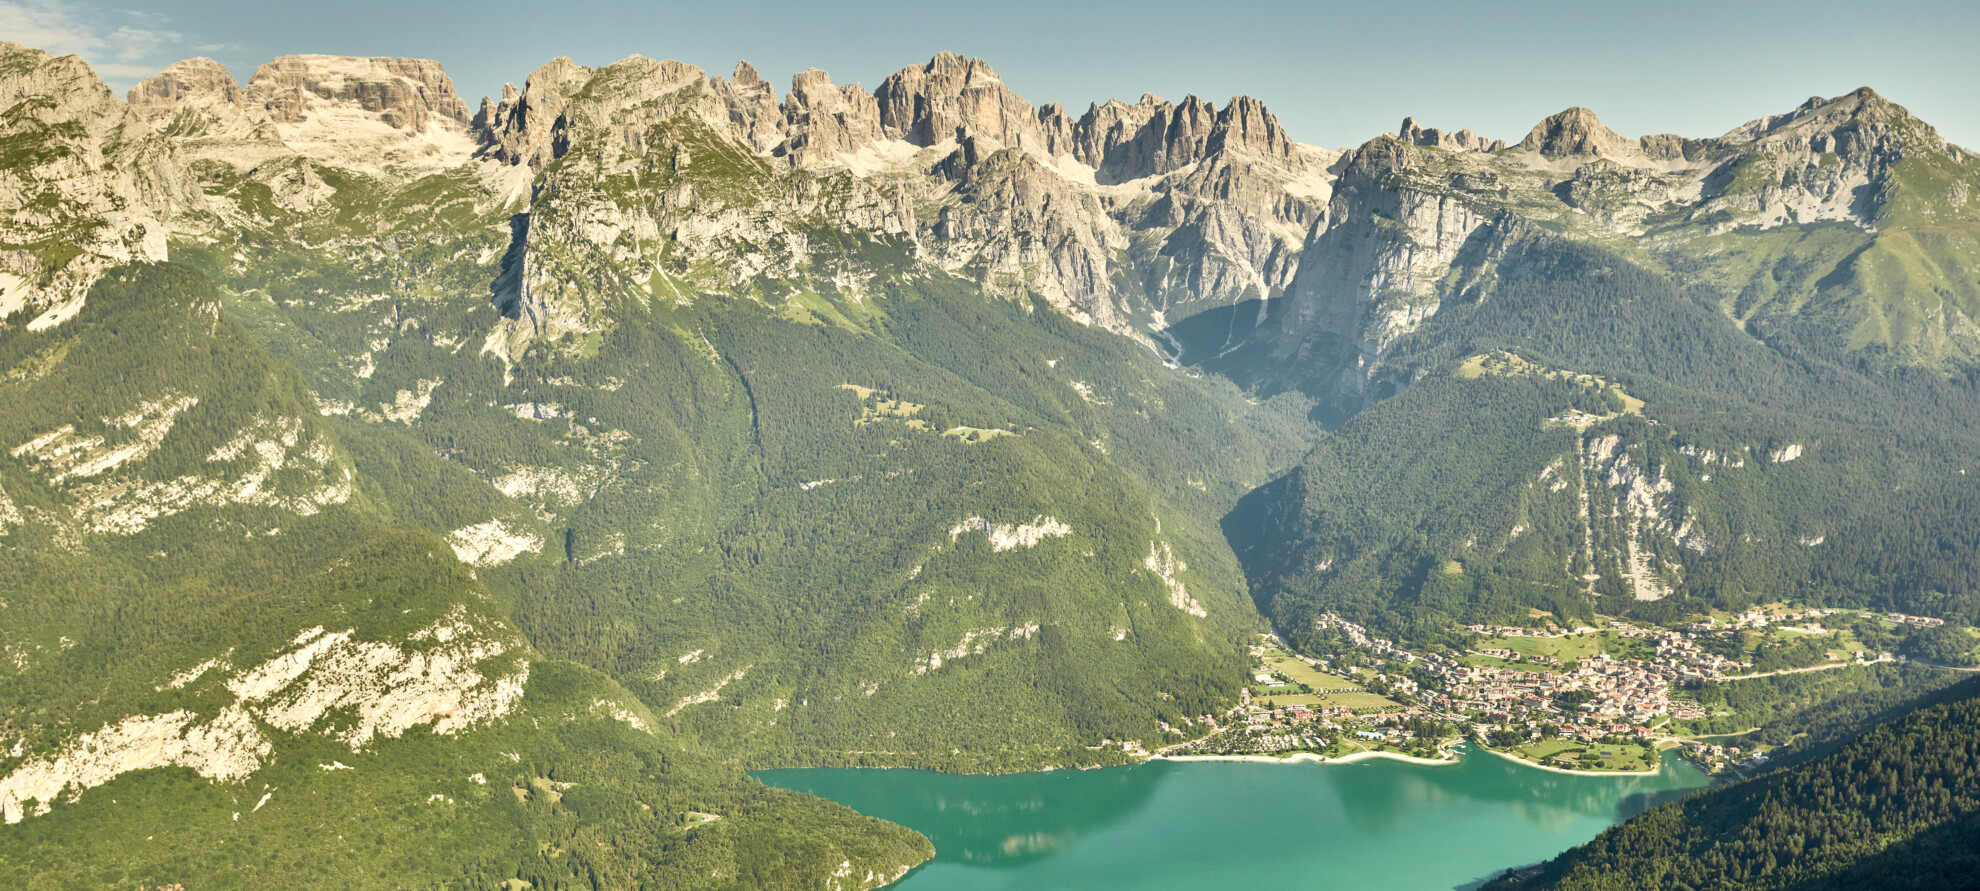 Dolomiti Paganella - Dolomiti di Brenta - Lago di Molveno
